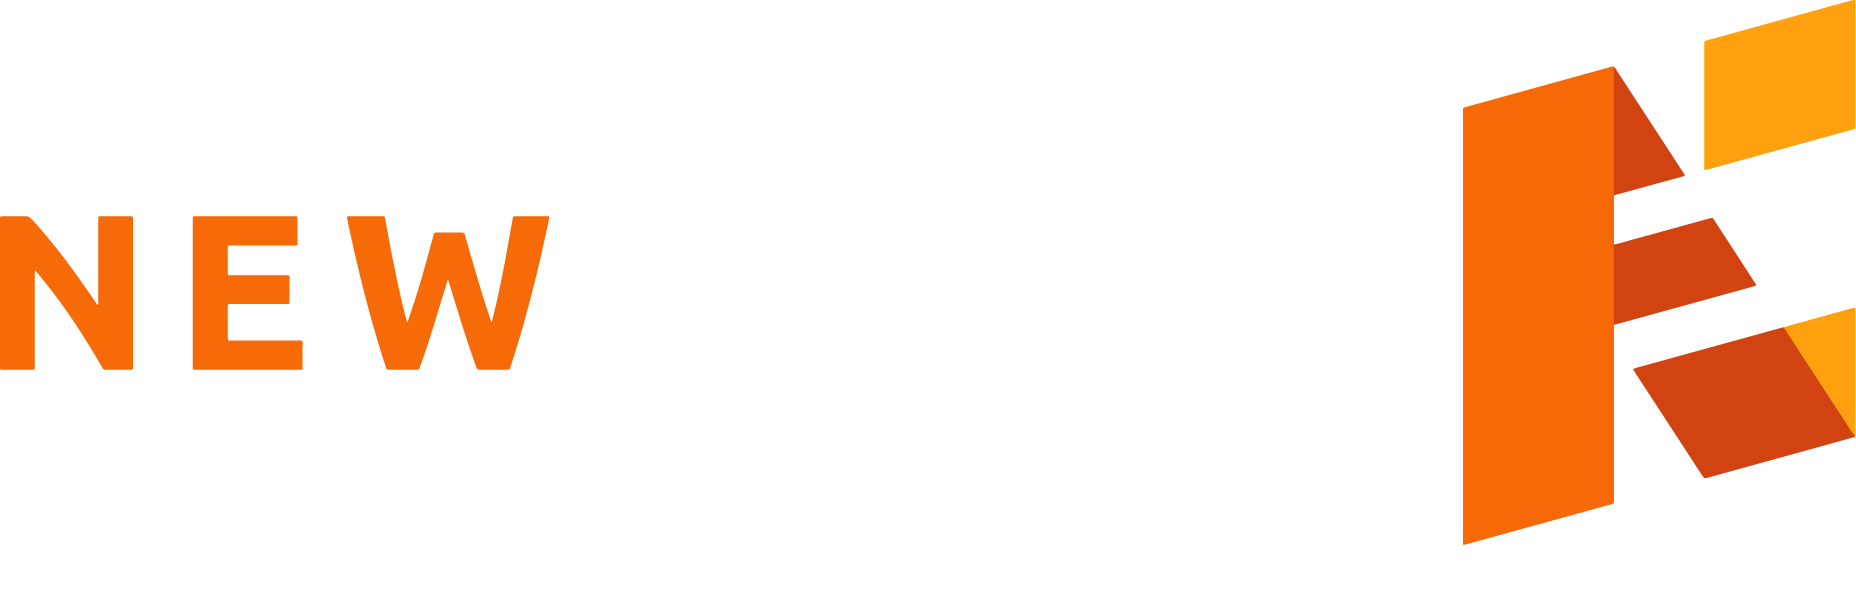 New Edge